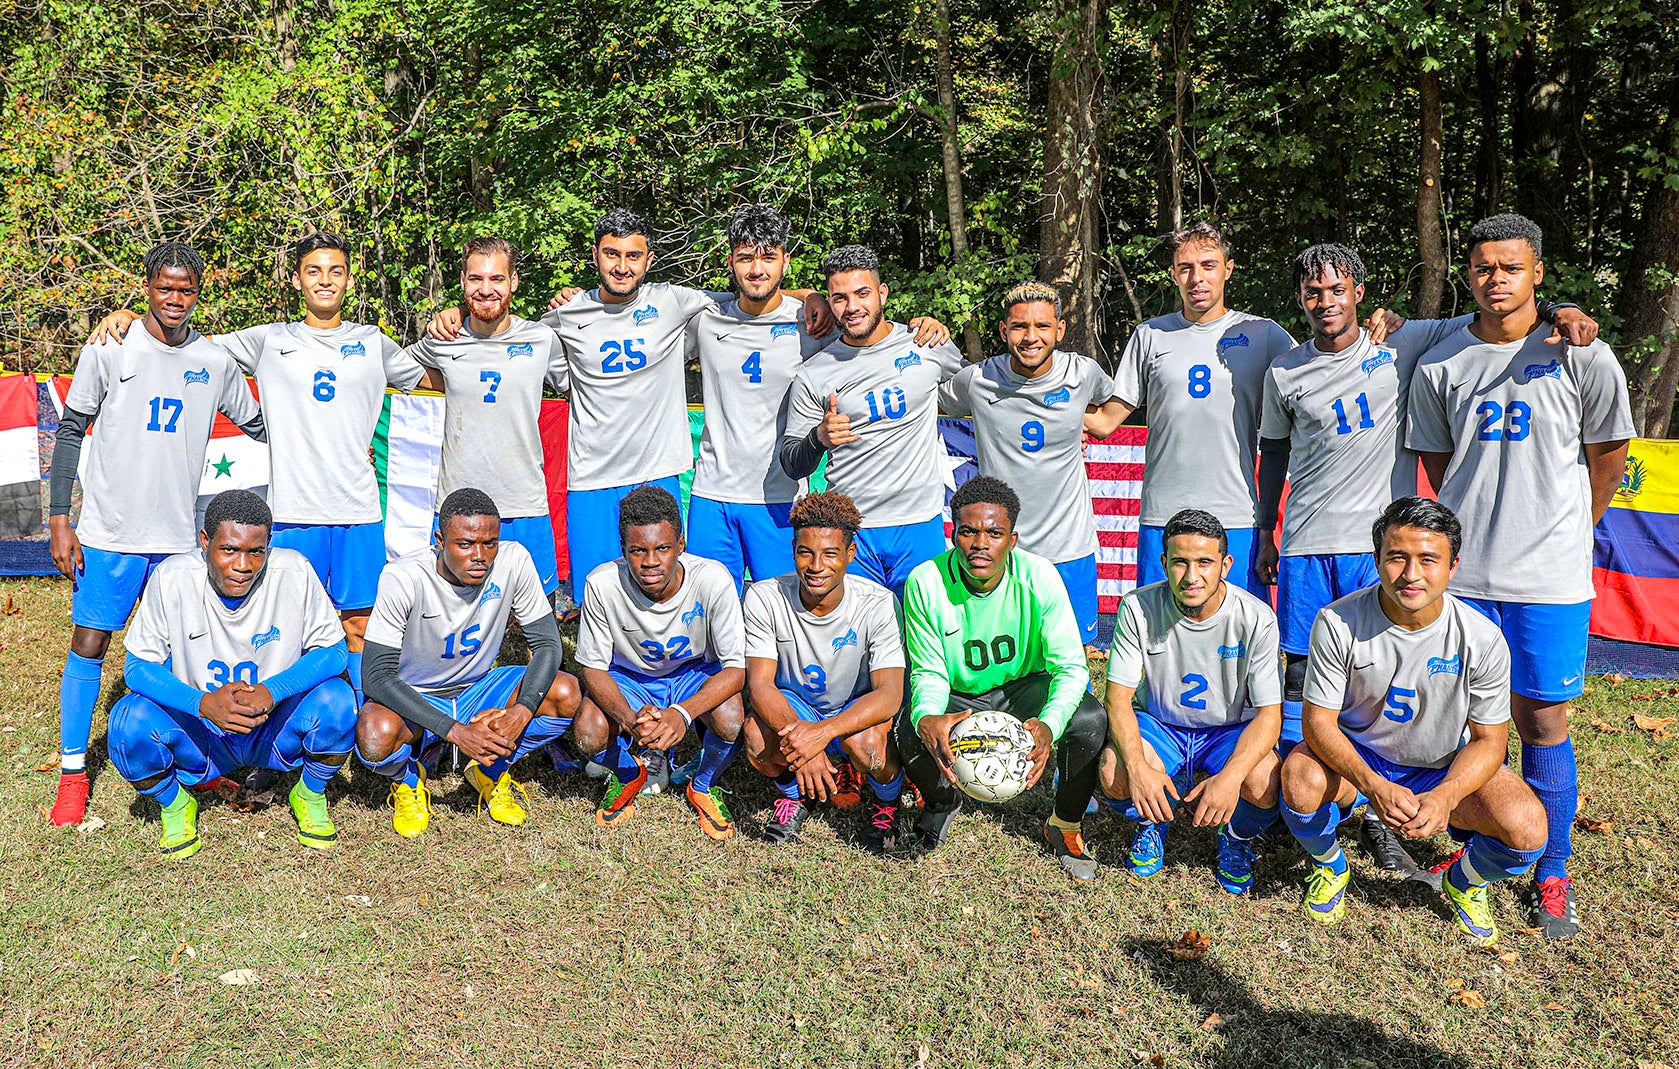 2019 Men's Soccer Team Photo